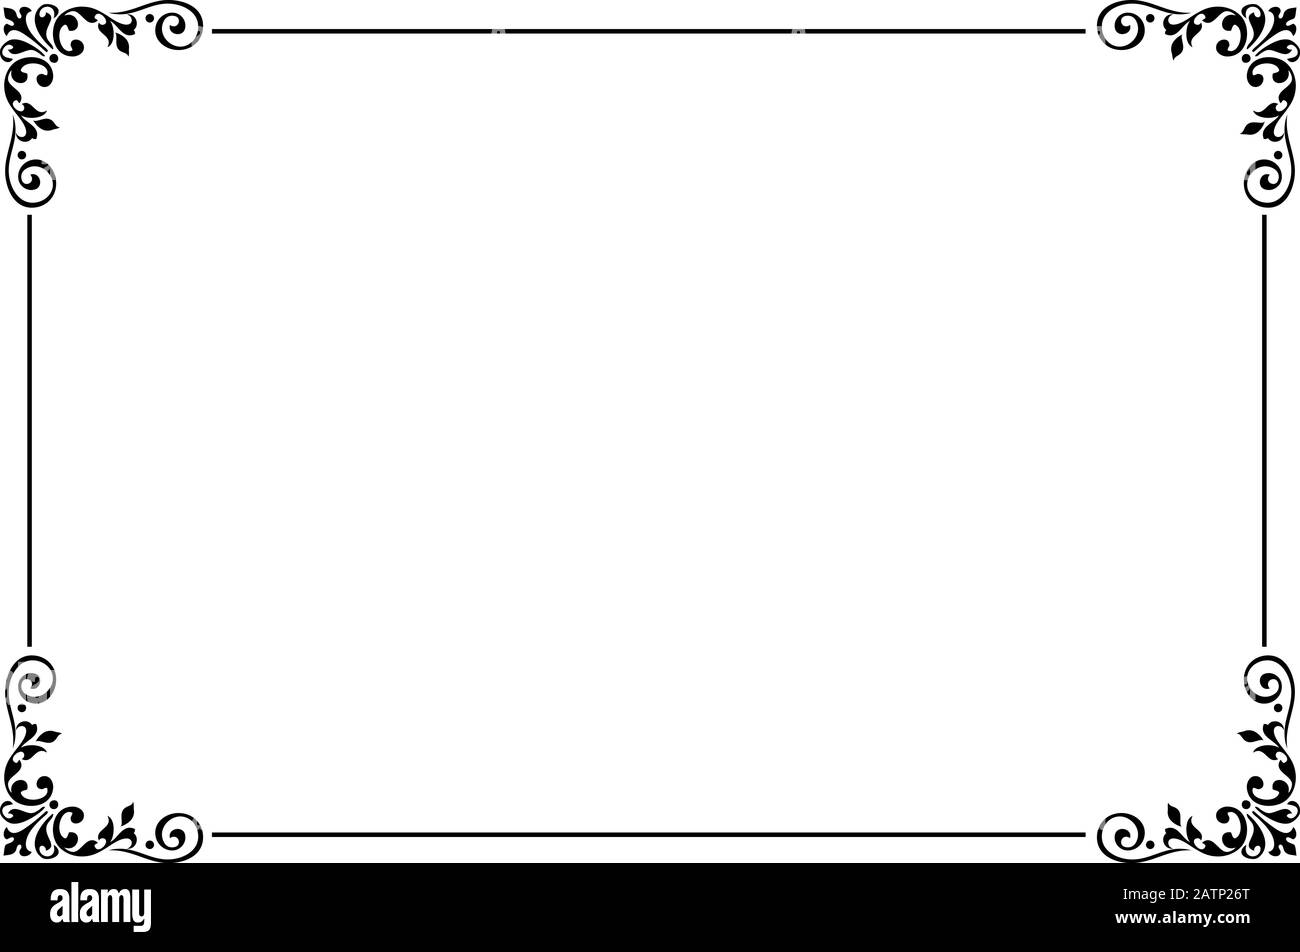 Bordure de page Banque d'images noir et blanc - Alamy